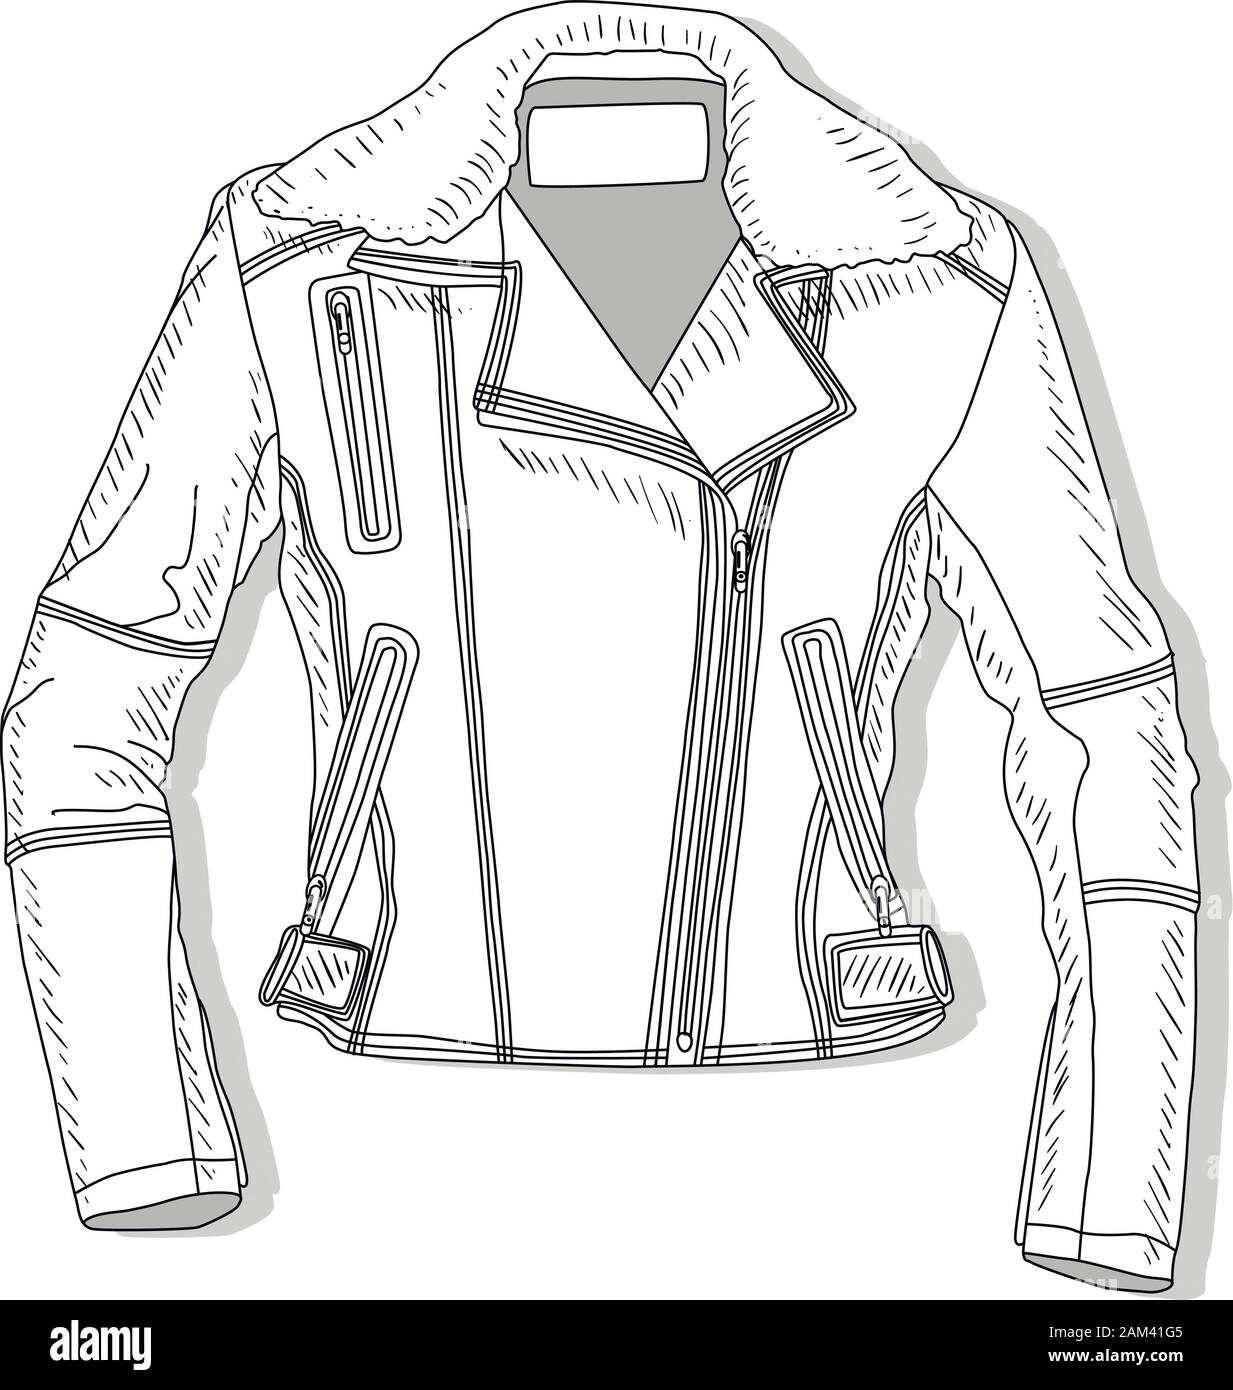 Pilot Jacke. Bomber. Vector Illustration der weiblichen Piloten Jacke auf Weiß. Stock Vektor